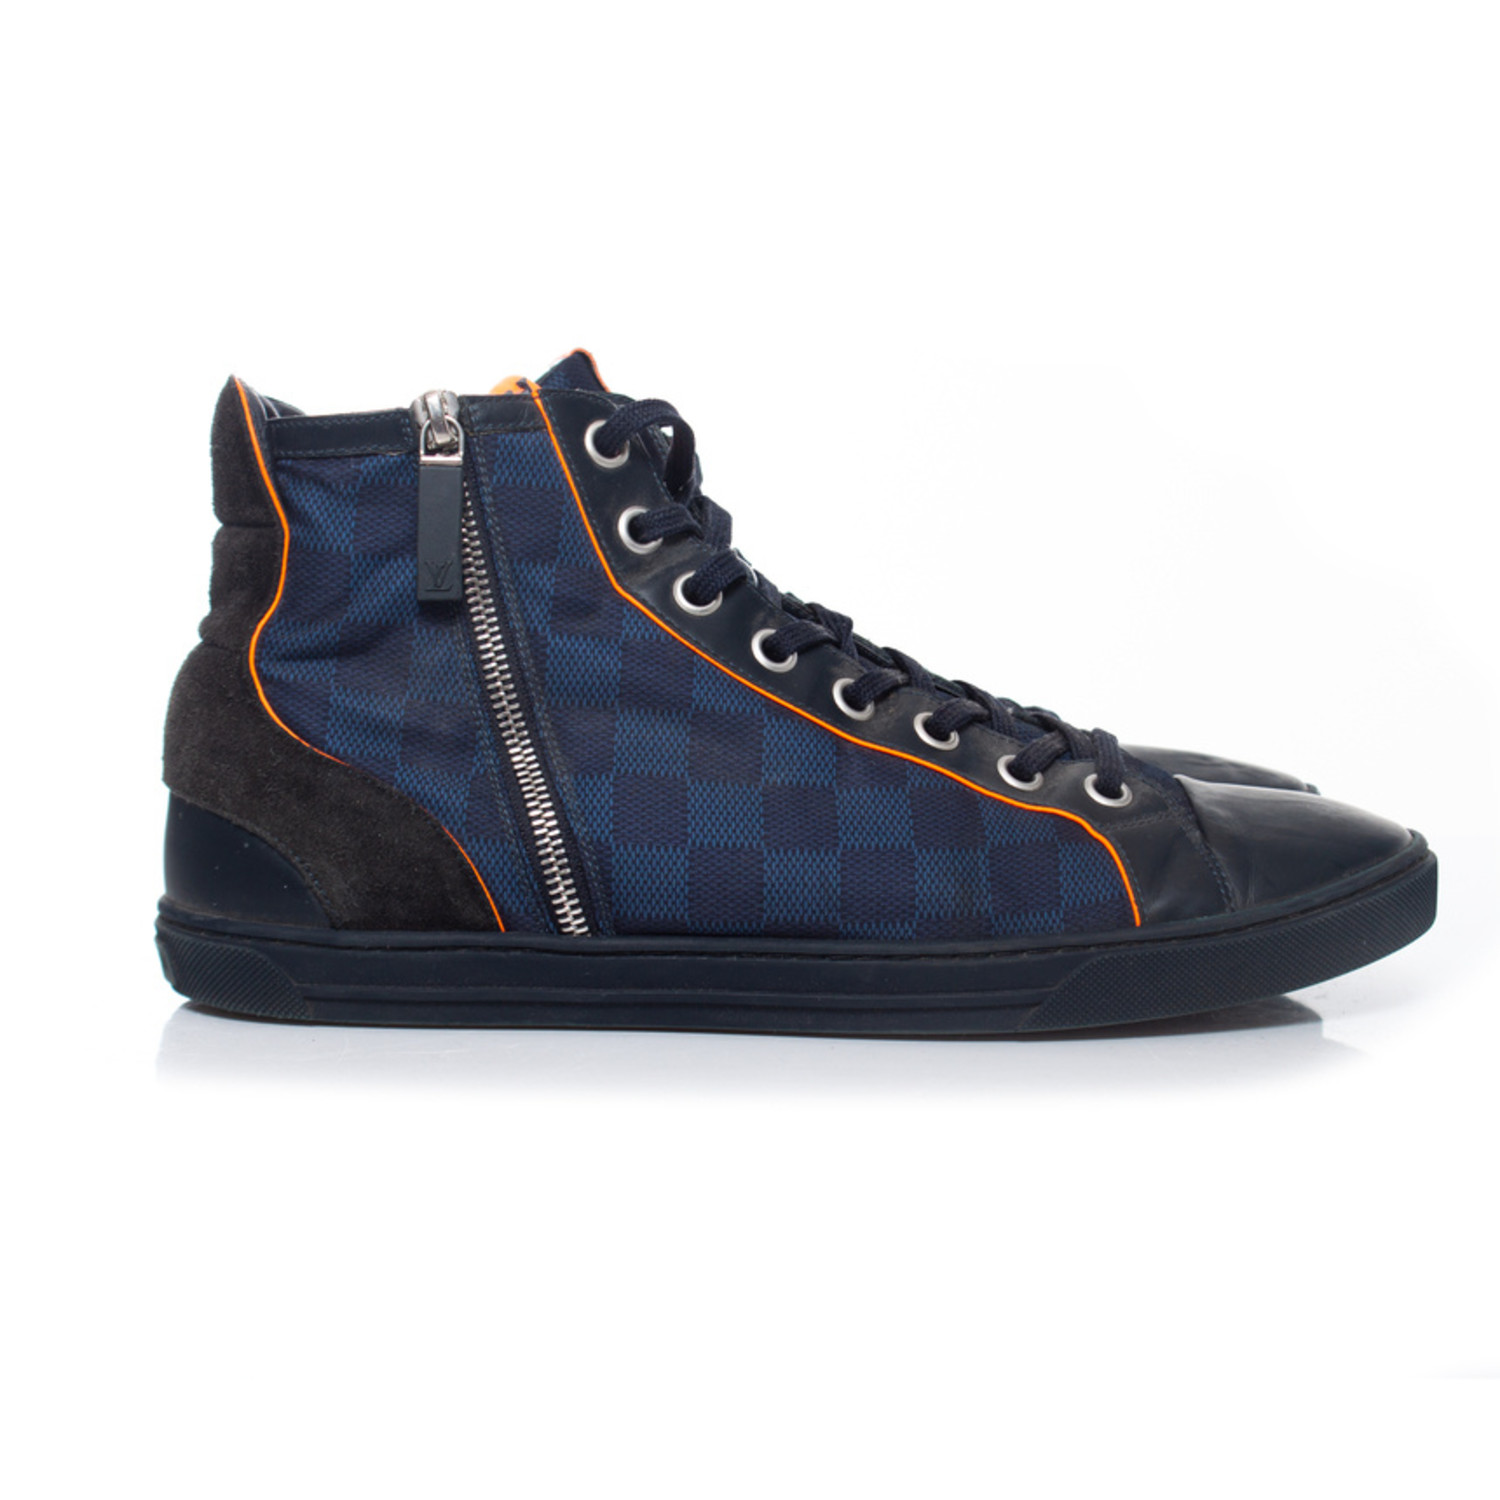 LOUIS VUITTON Damier Challenge Zip Up Sneakers 9 Blue 89740